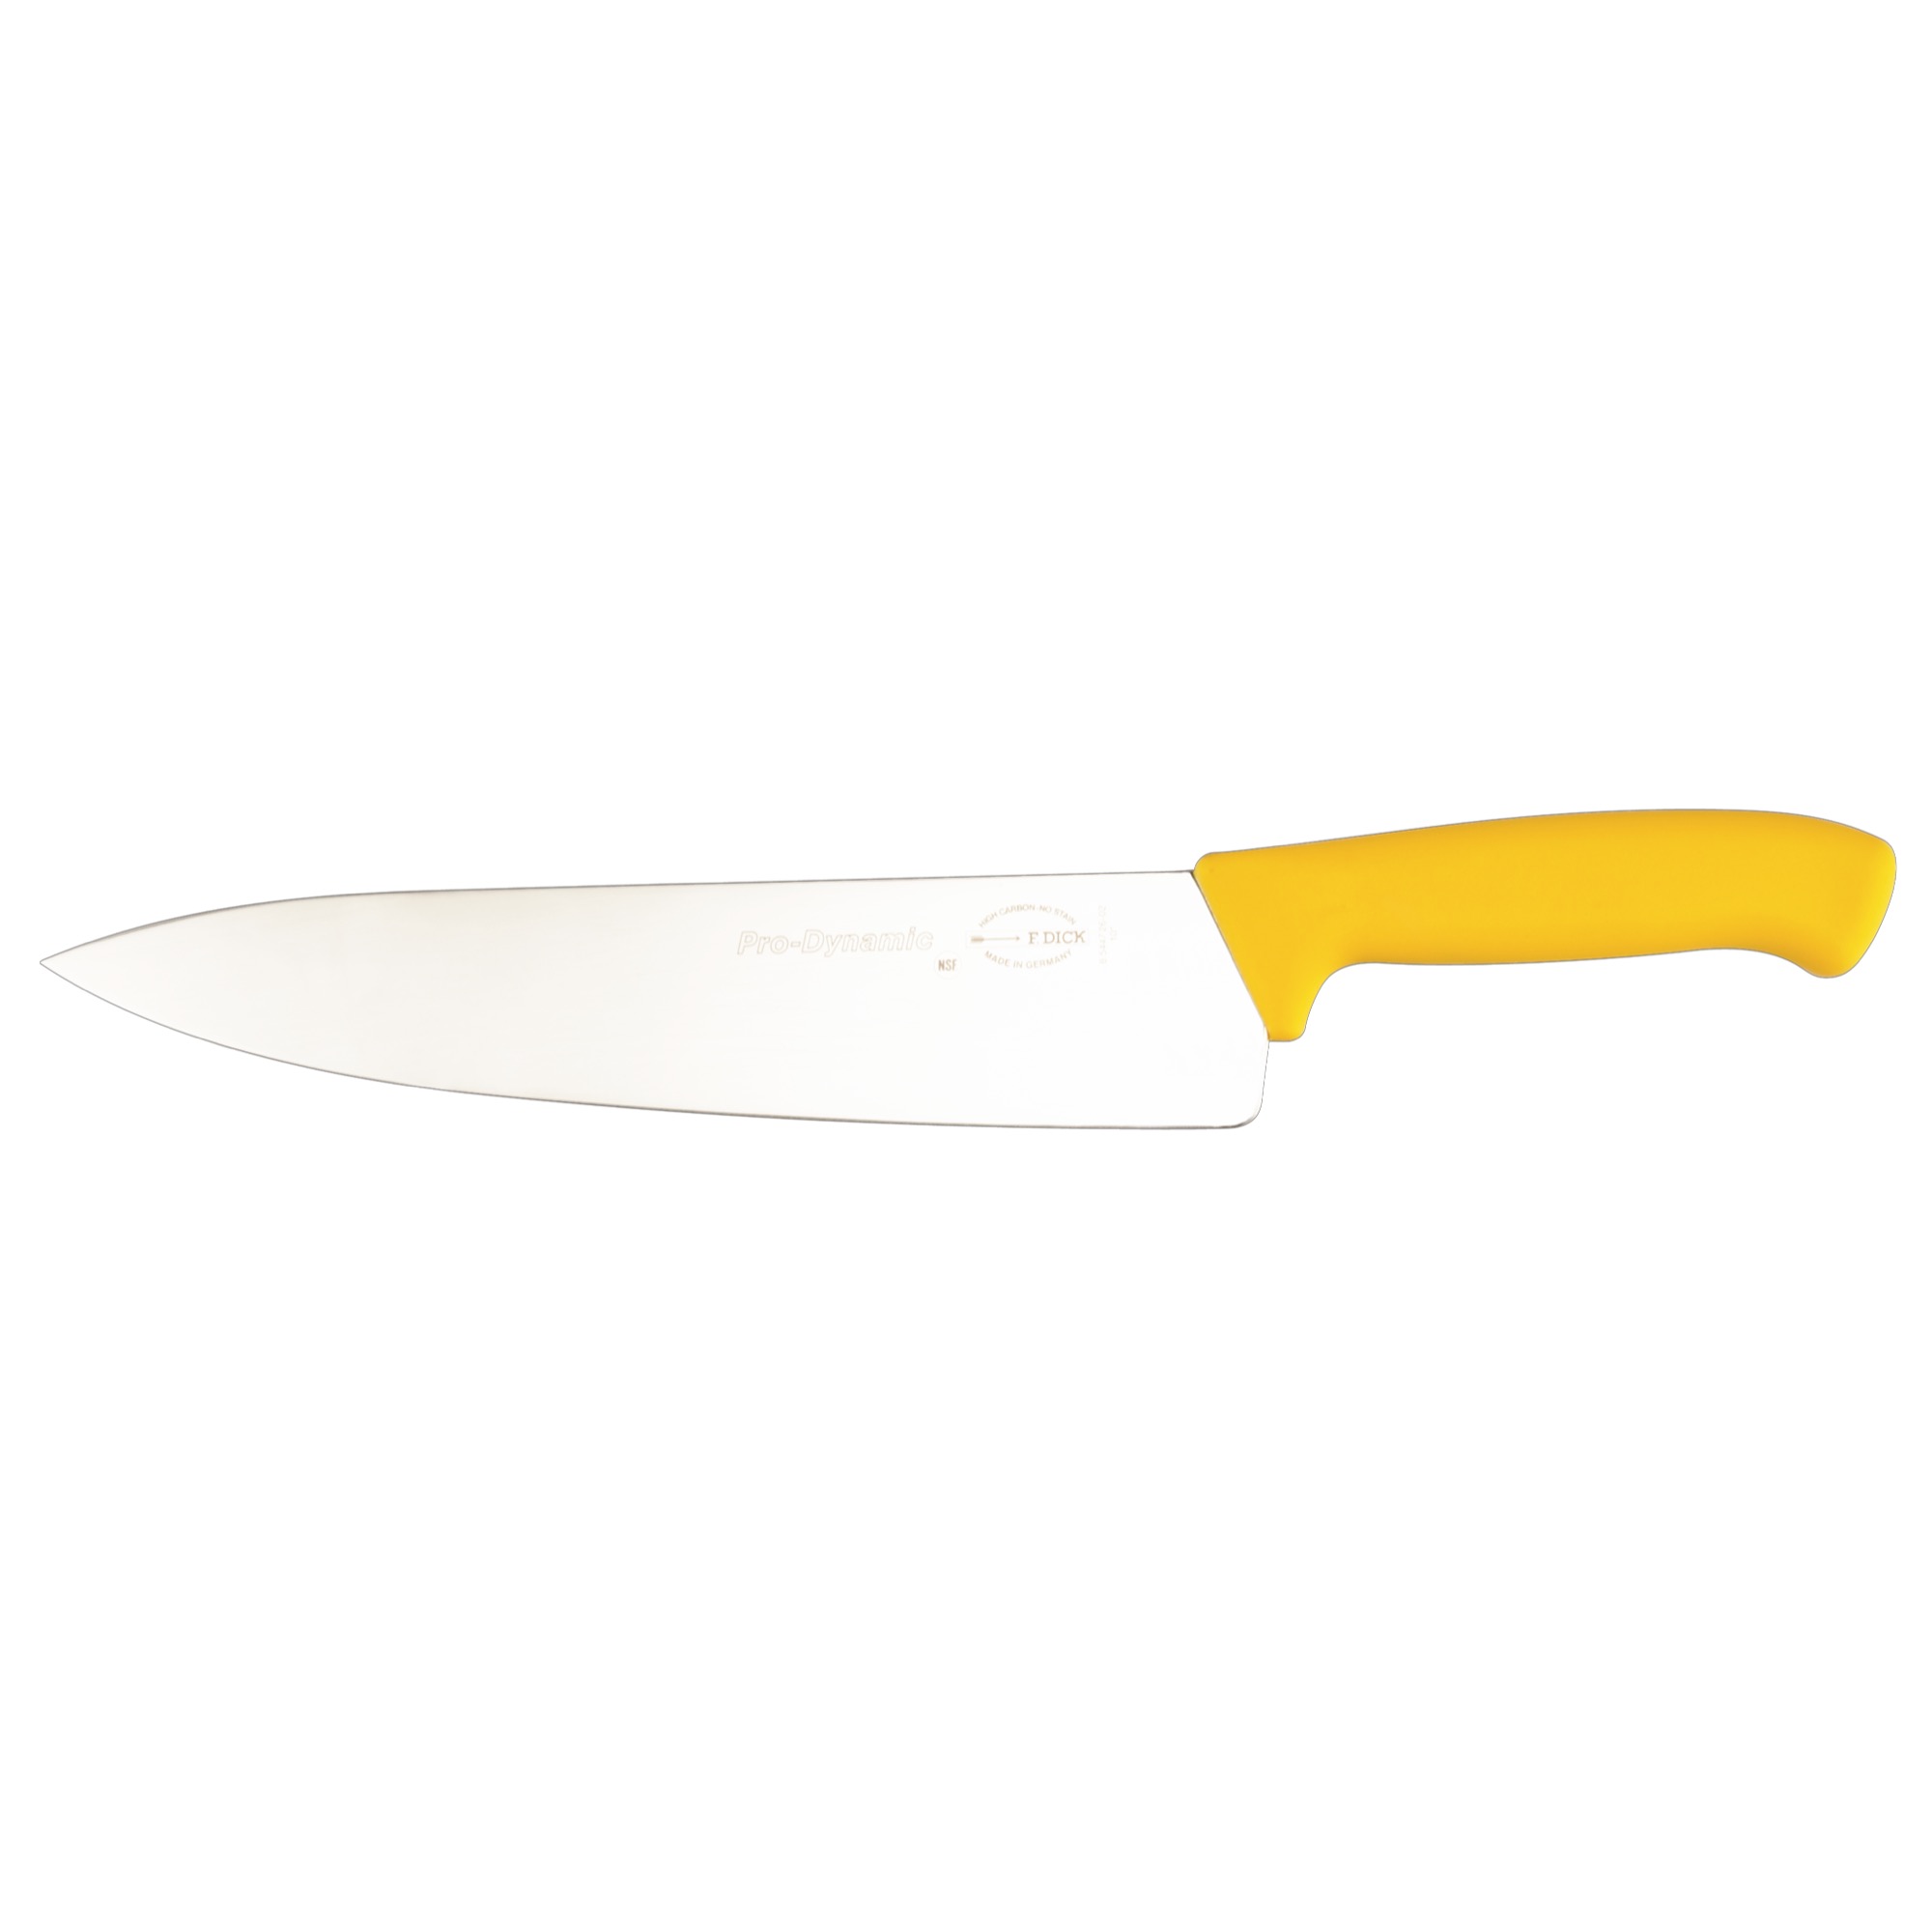 Dick nôž kuchársky 26cm žltý